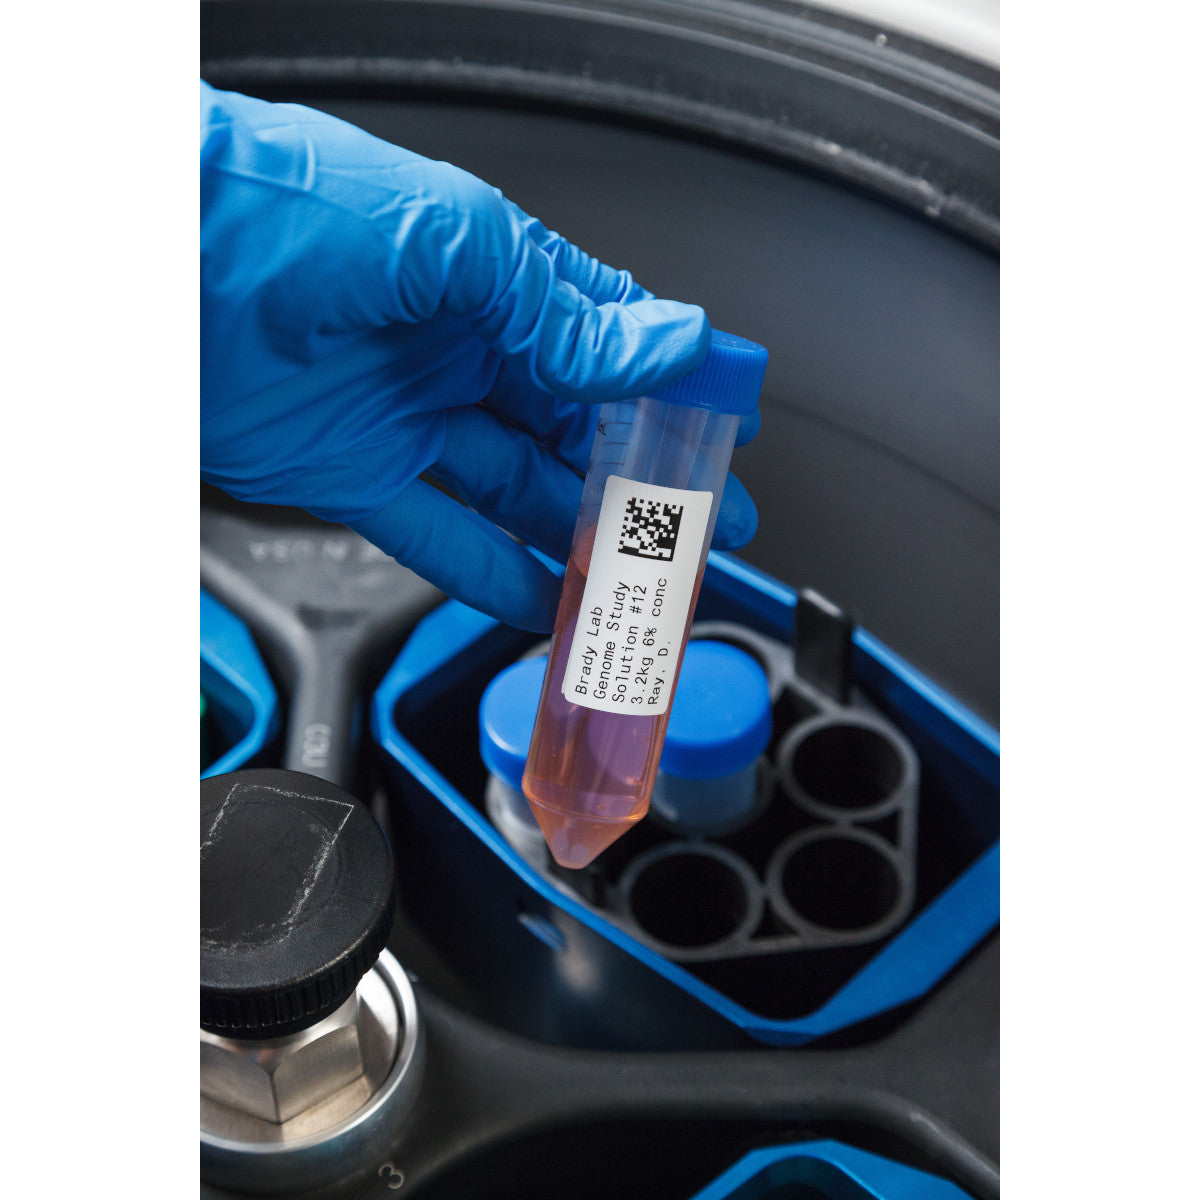 011267 - Etichette per criogenia e autoclave in poliestere core 76 mm ROTOLO DA 3000 ETICHETTE